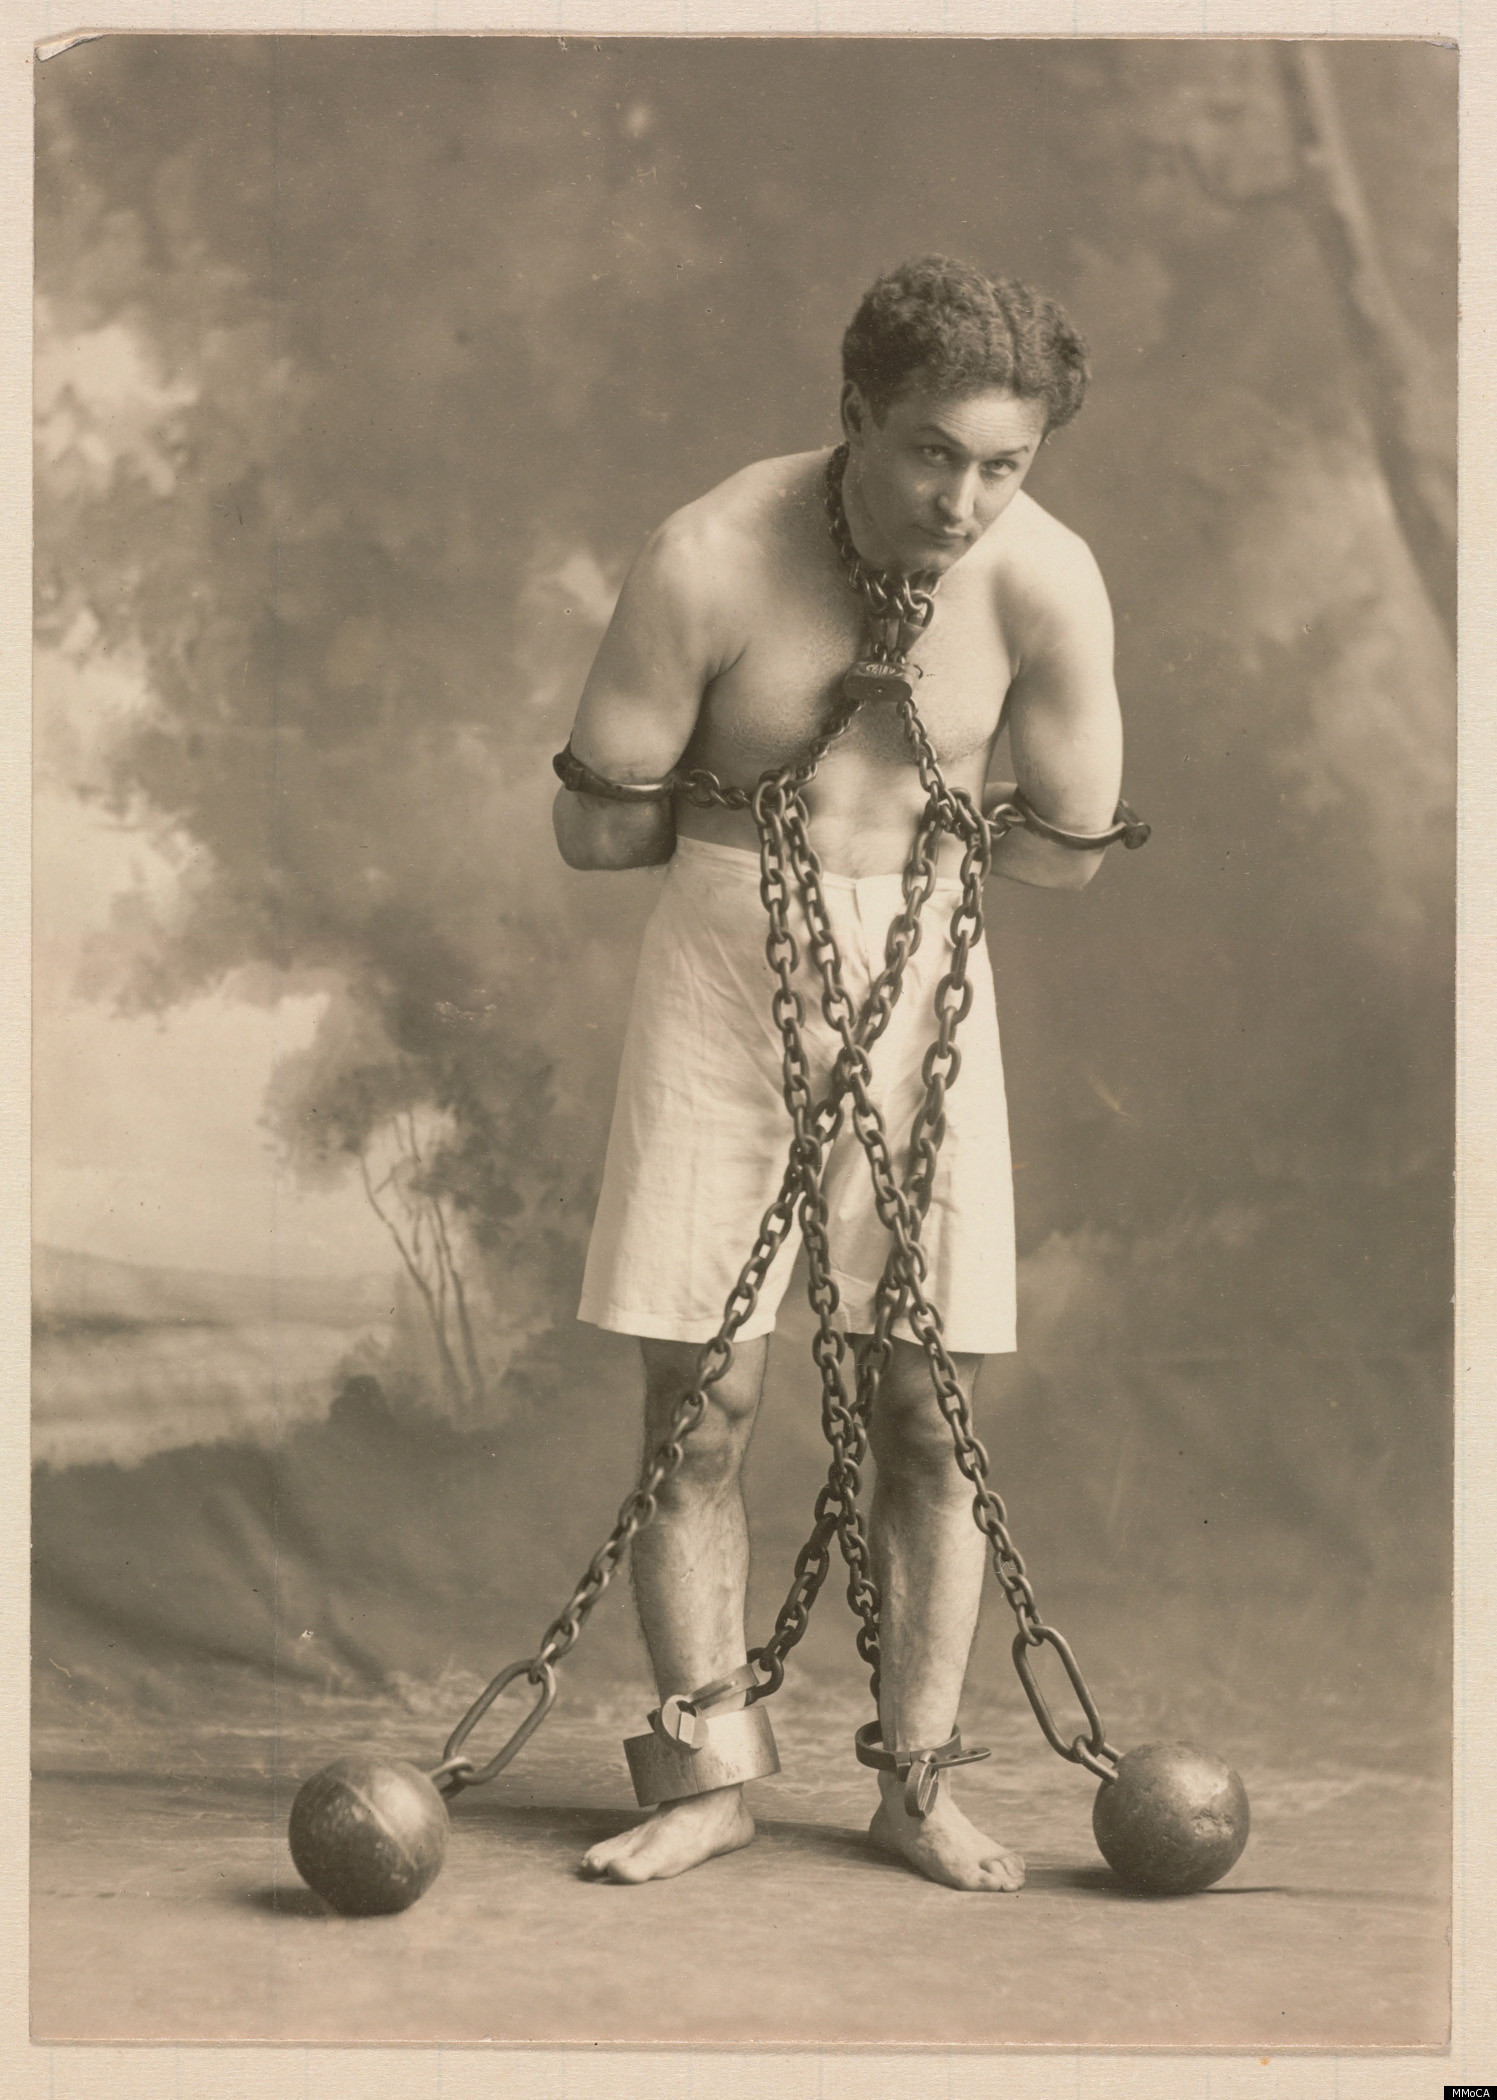 Résultat de recherche d'images pour "Houdini"